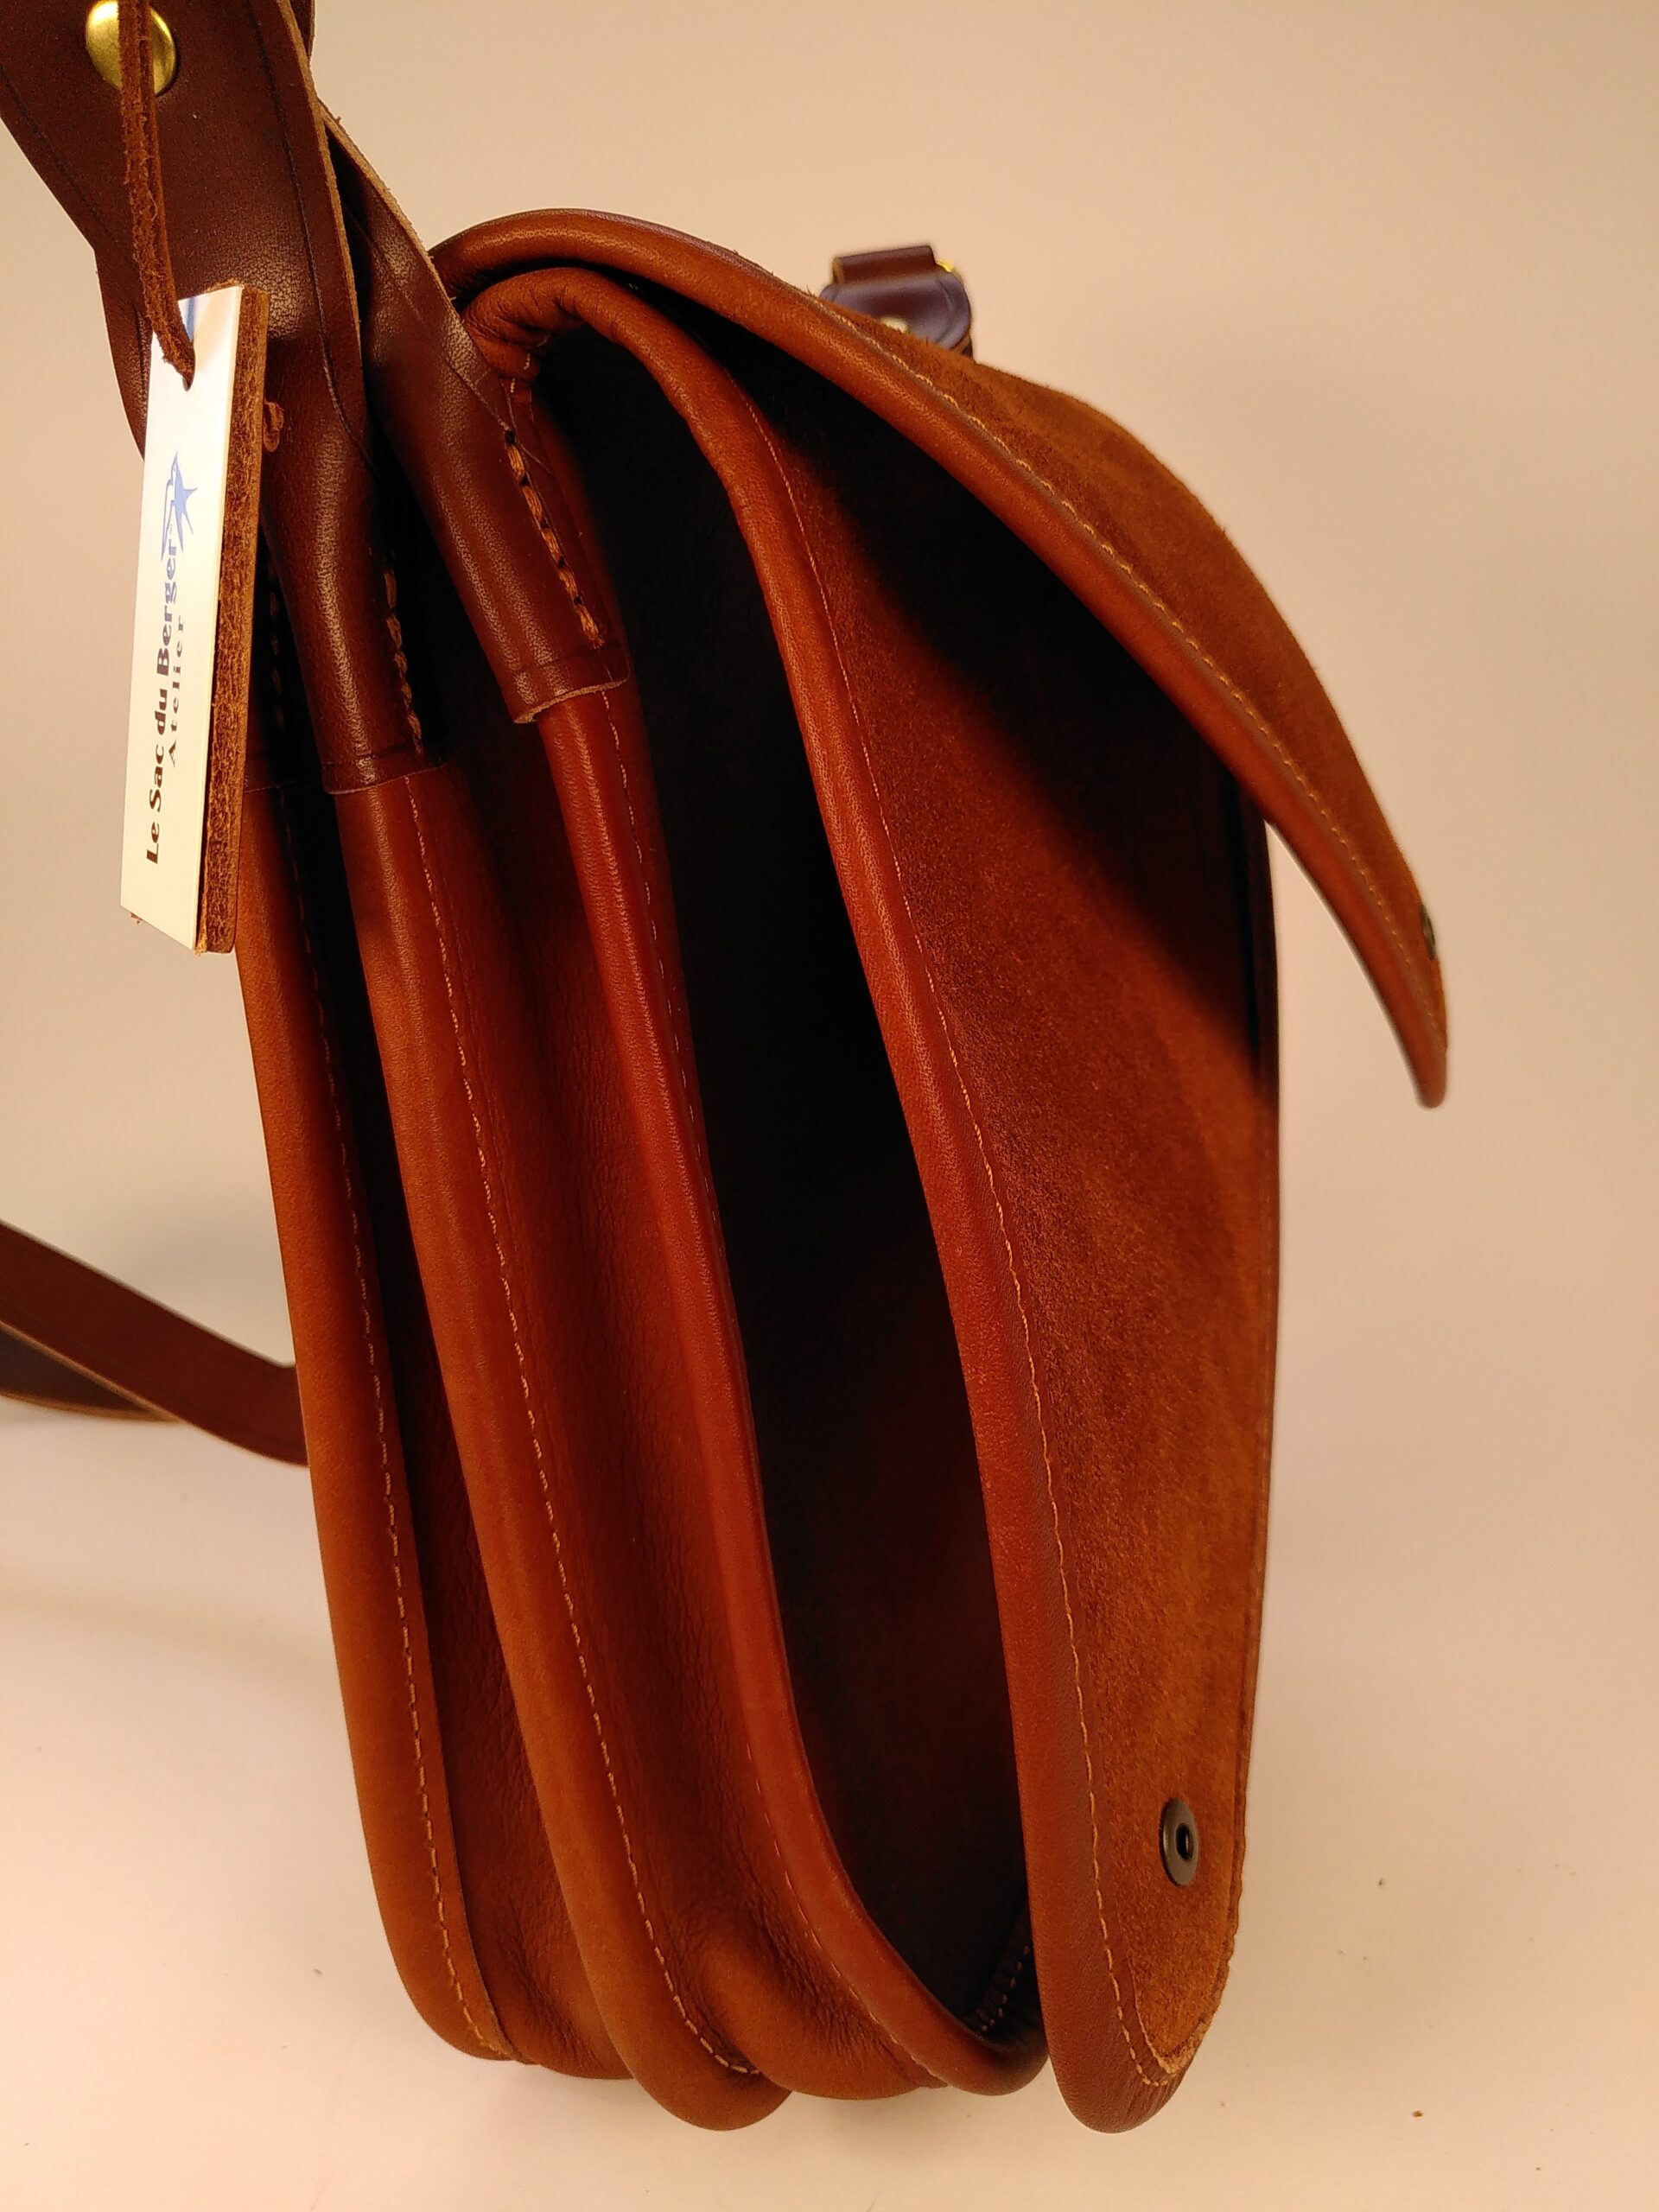 Réalisez sac, pochettes et accessoires en cuir - Marie Claire